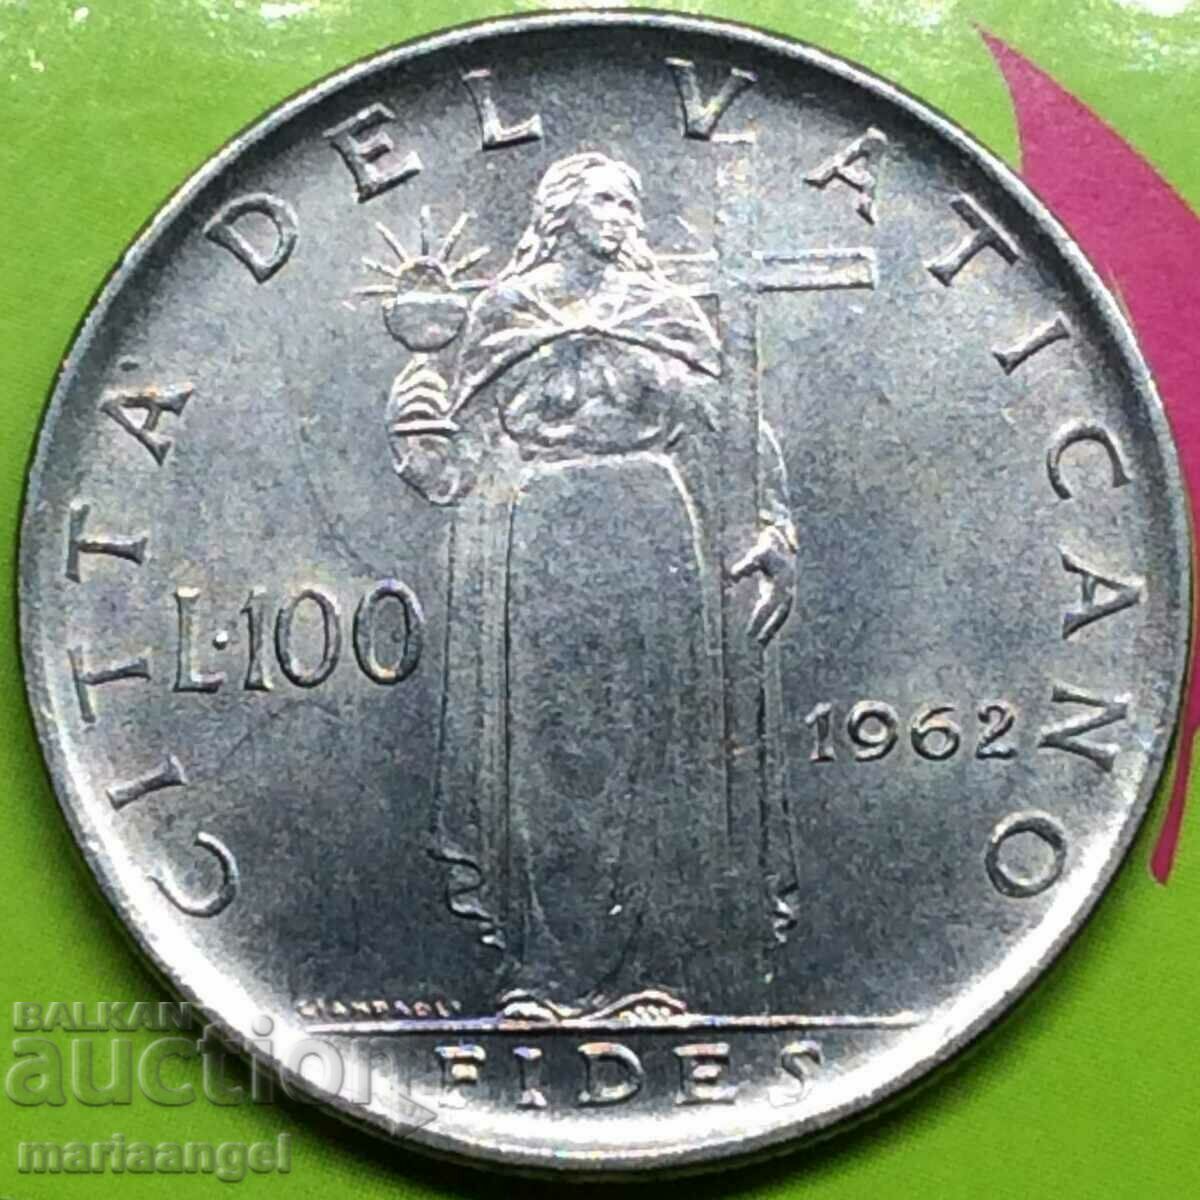 100 lire 1962 Vatican John XXIII